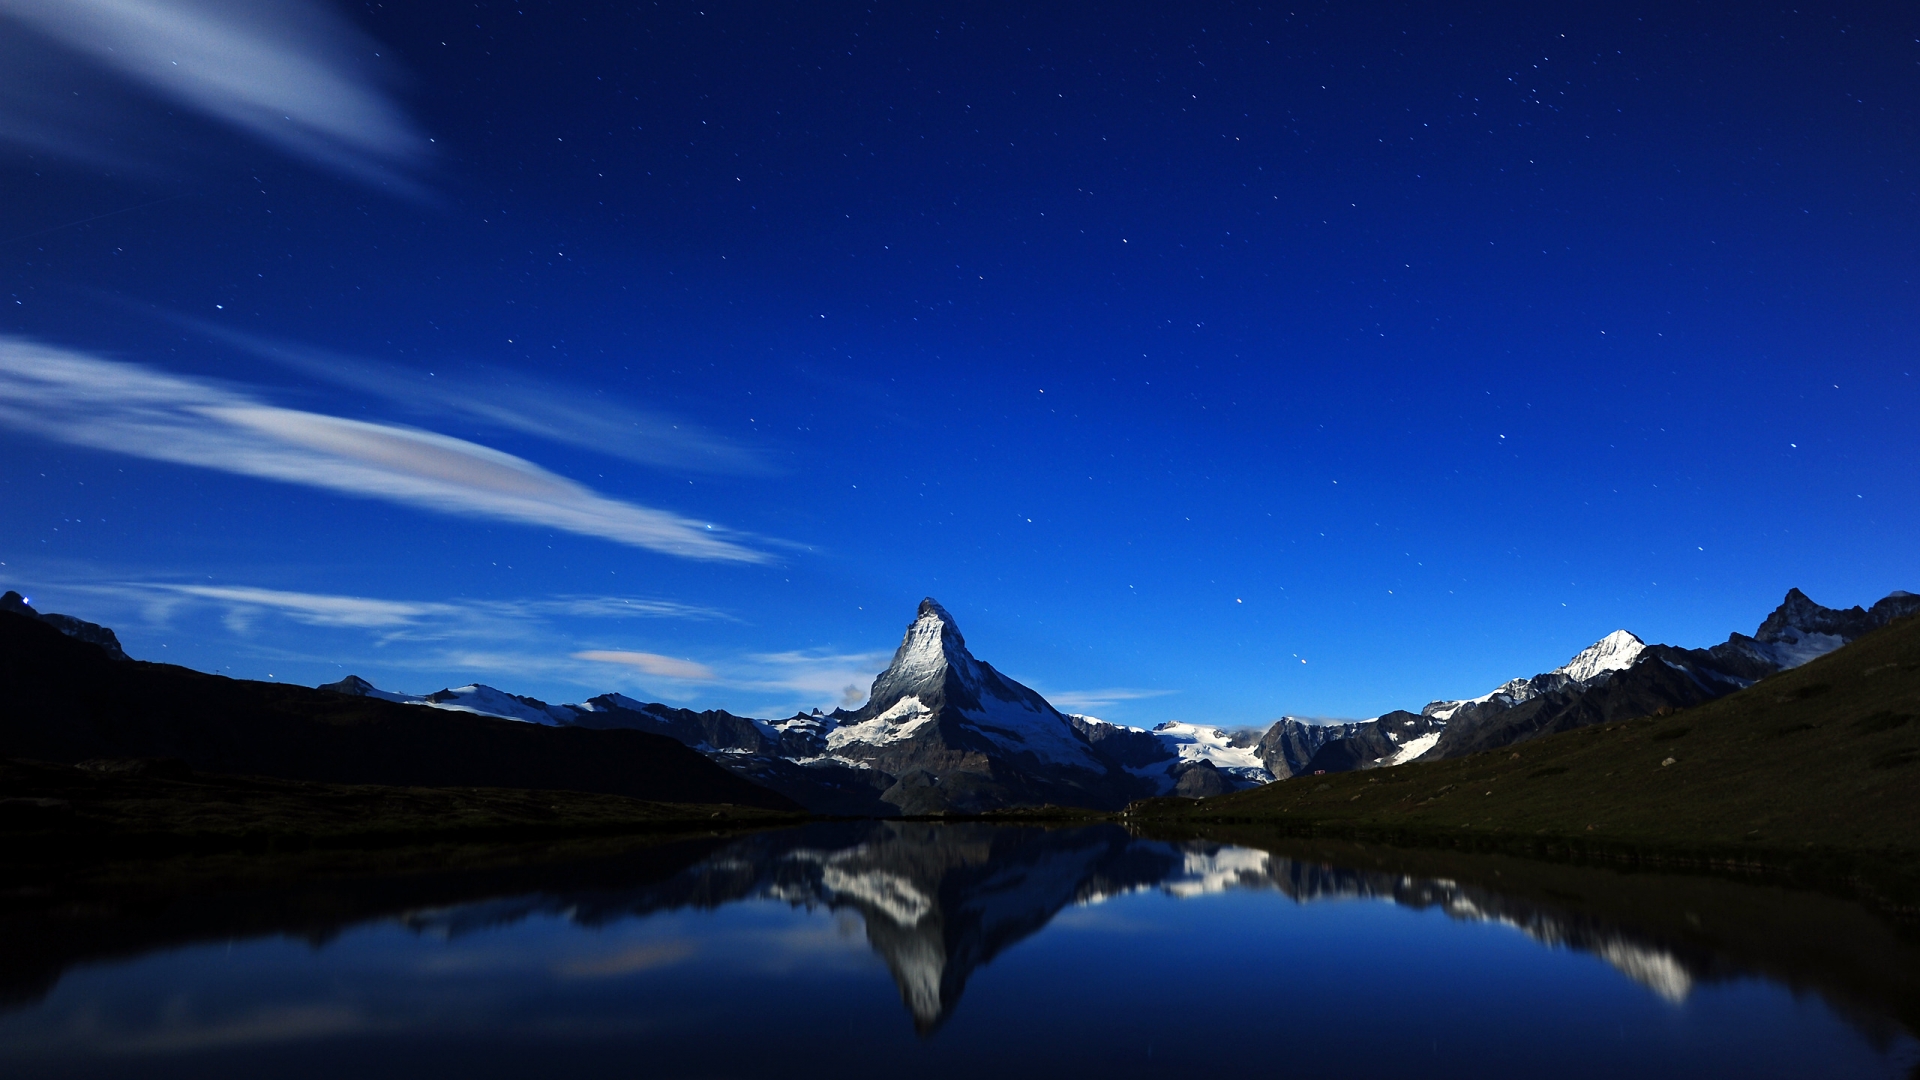 Matterhorn Midnight Reflection for 1920 x 1080 HDTV 1080p resolution